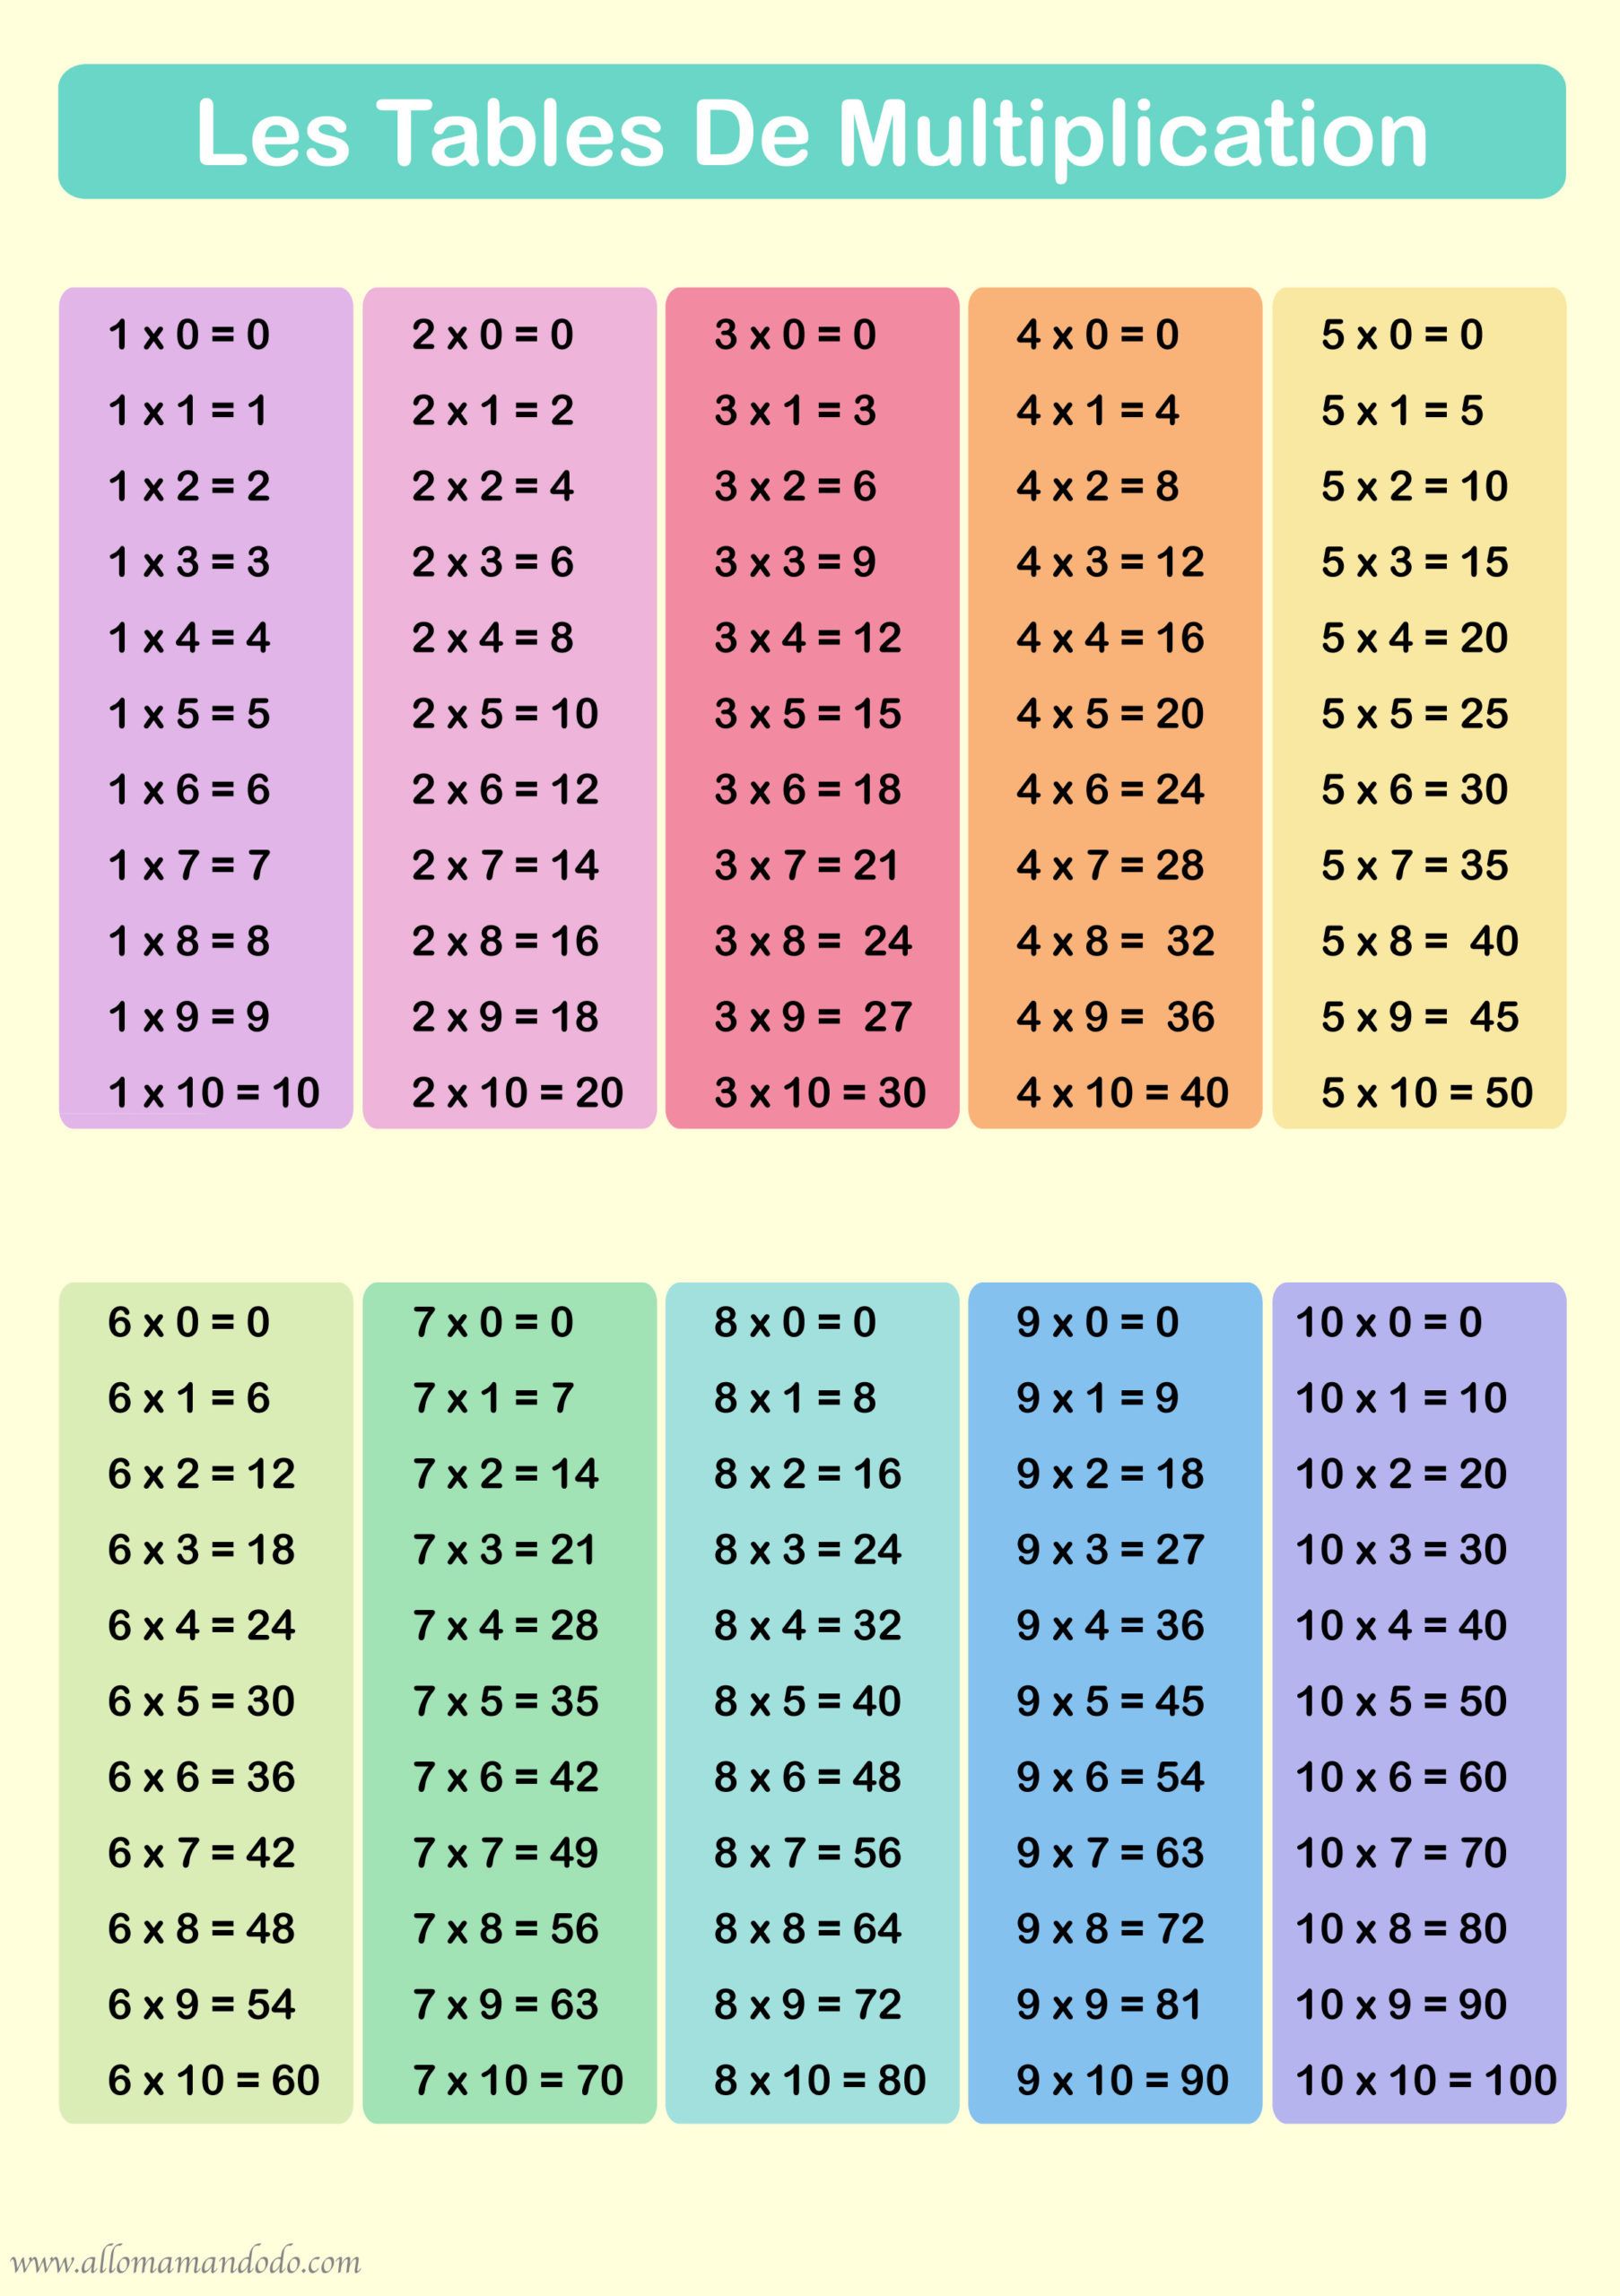 Таблица умножения (a4)